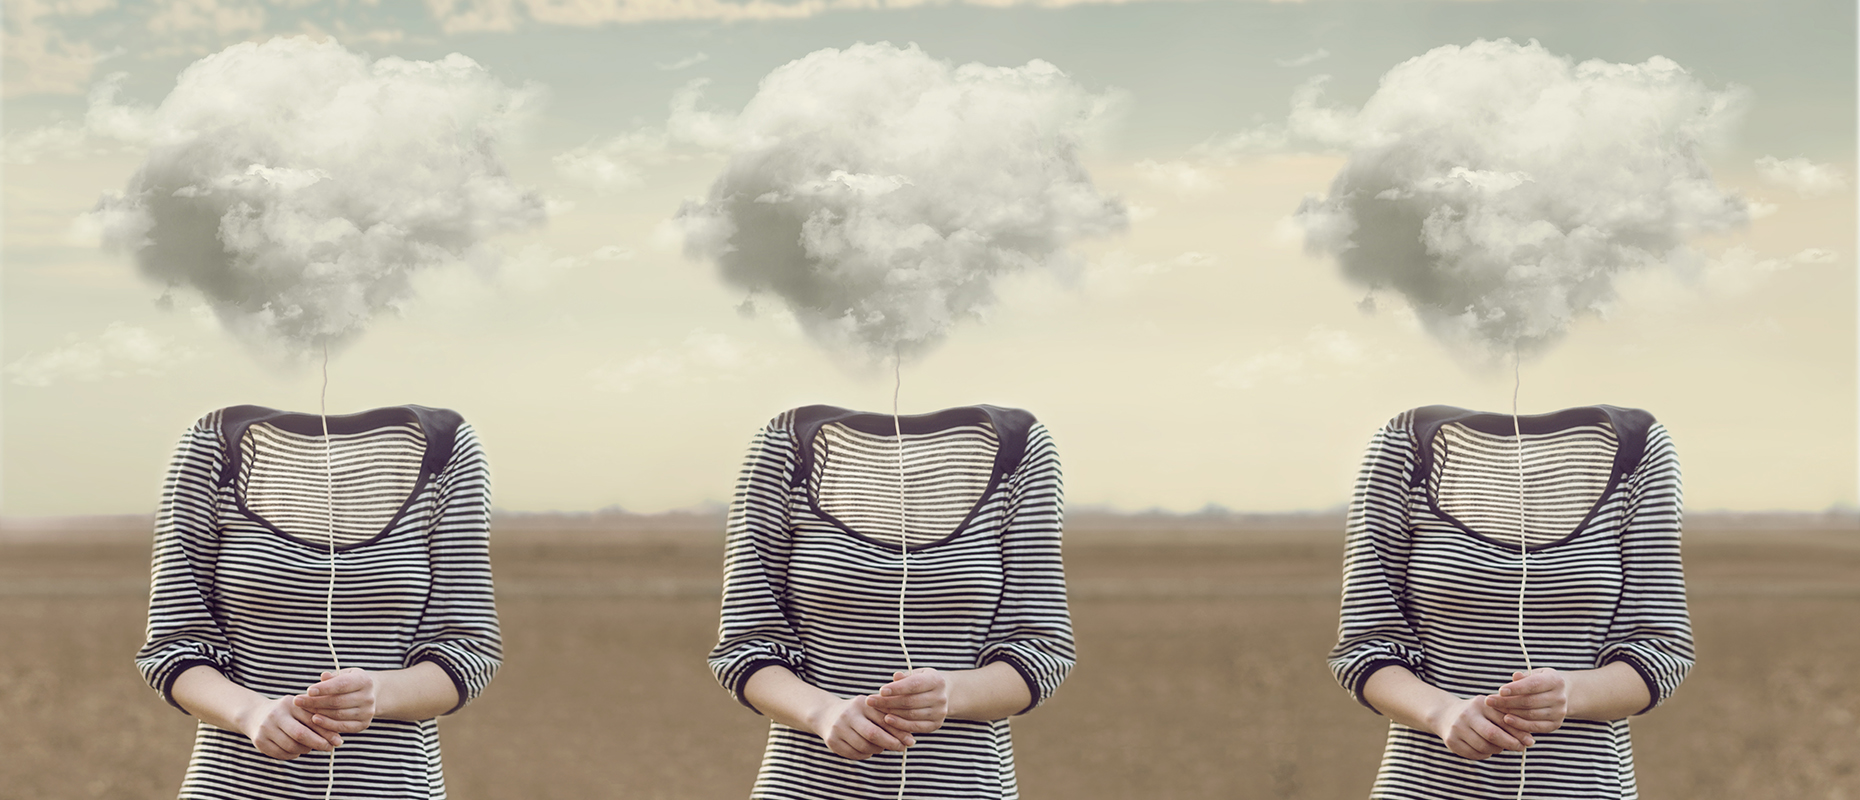 Heads in the clouds - drei Frauen ohne Kopf mit je einer Wolke über dem Hals